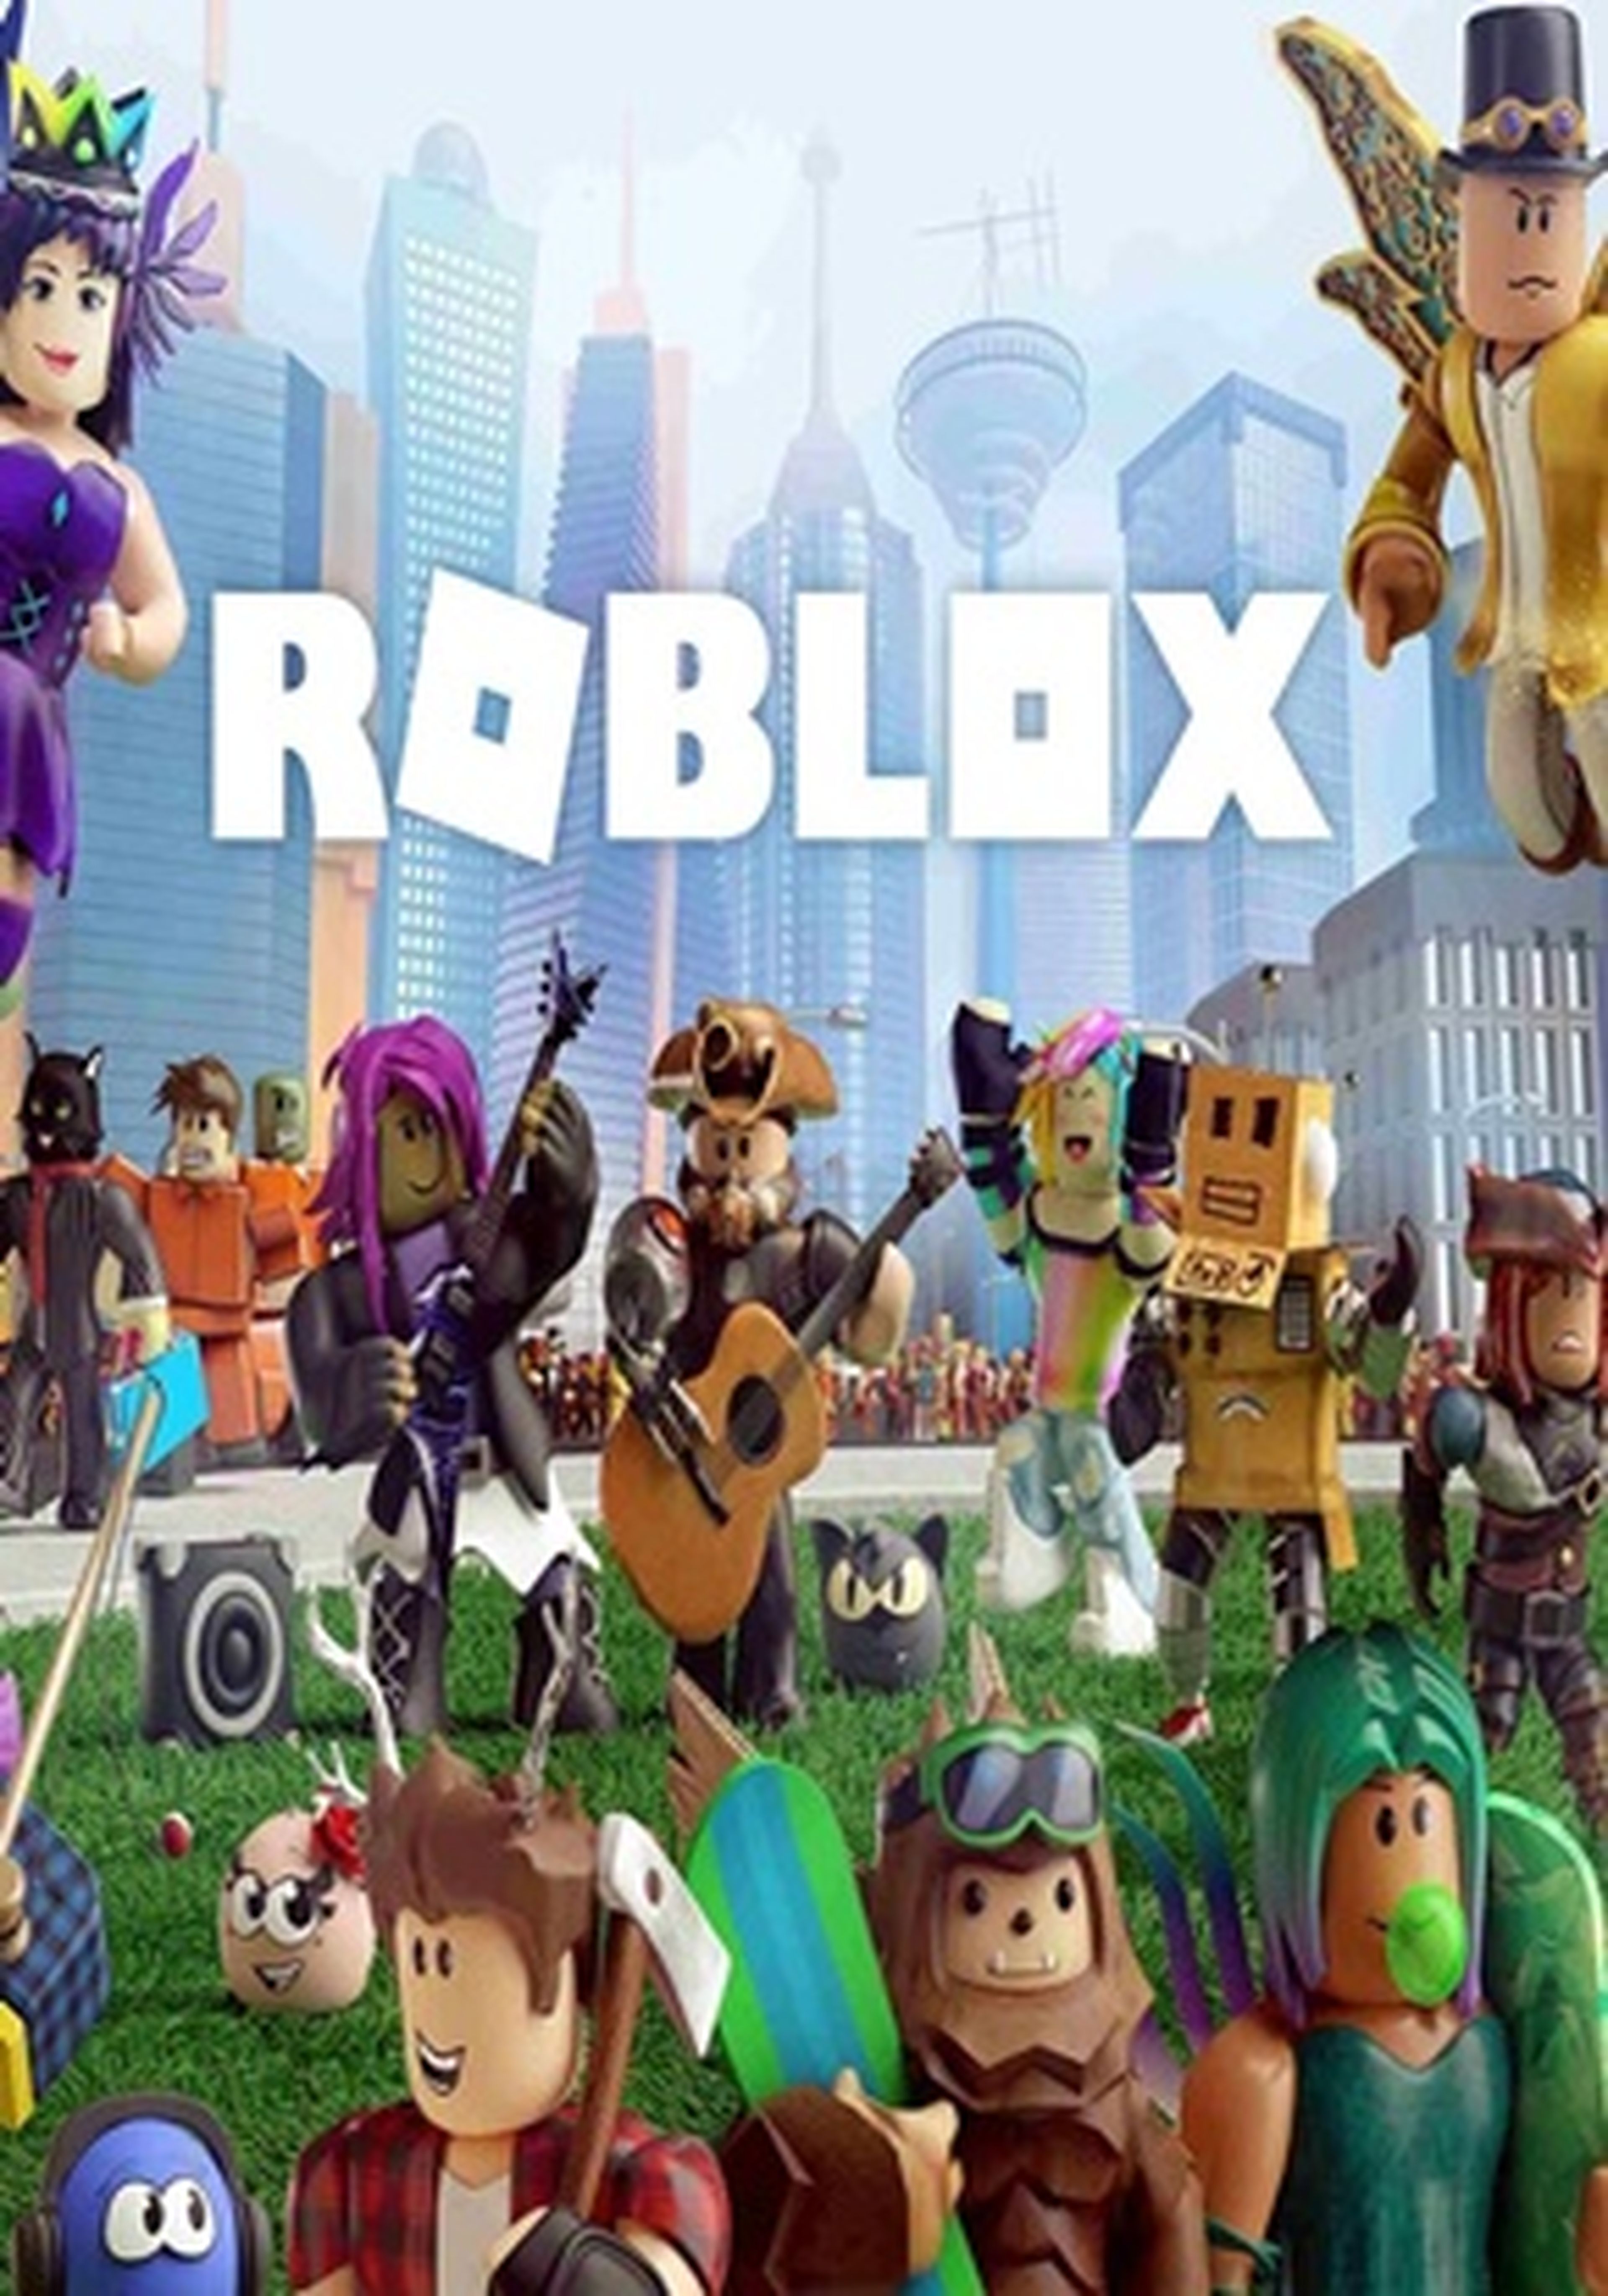 Consigue Robux gratis en Roblox con estos códigos